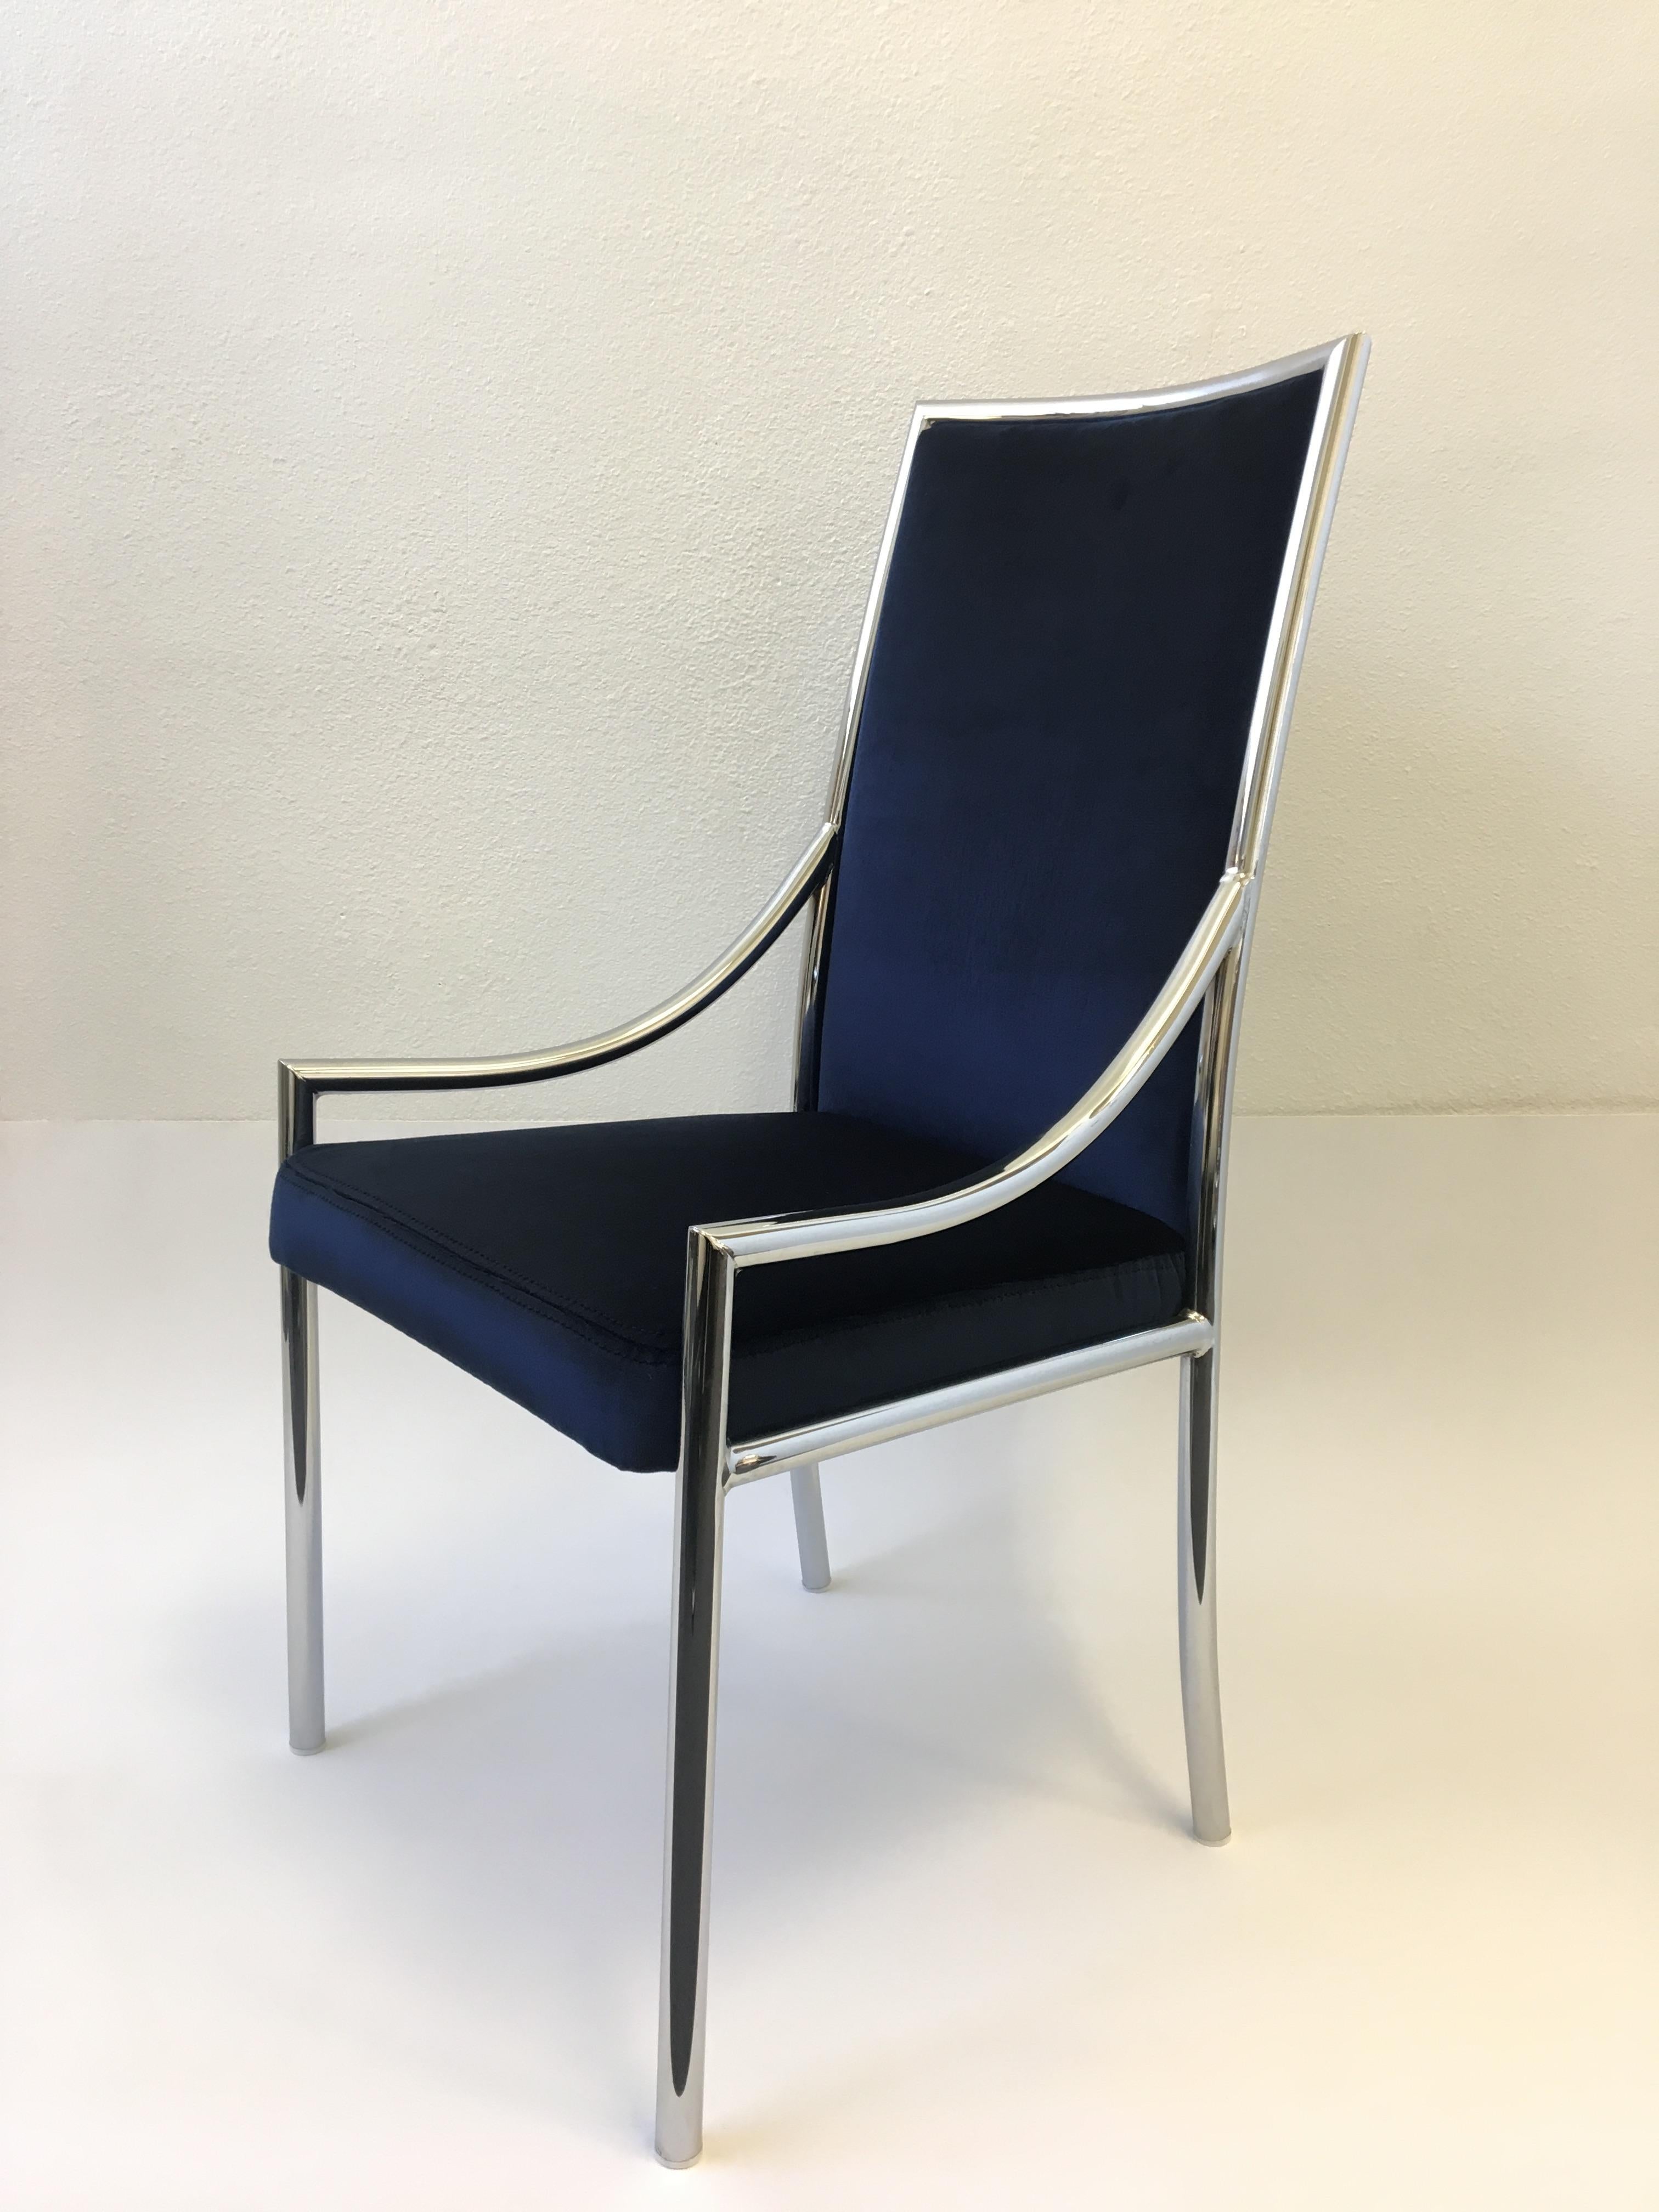 Un étonnant ensemble de dix fauteuils de salle à manger en chrome poli des années 1970 attribué à Pierre Cardin. Les cadres sont dans leur état d'origine. Nouvellement récupéré dans un doux velours bleu royal.

Dimension : dossier de 39,5 po de